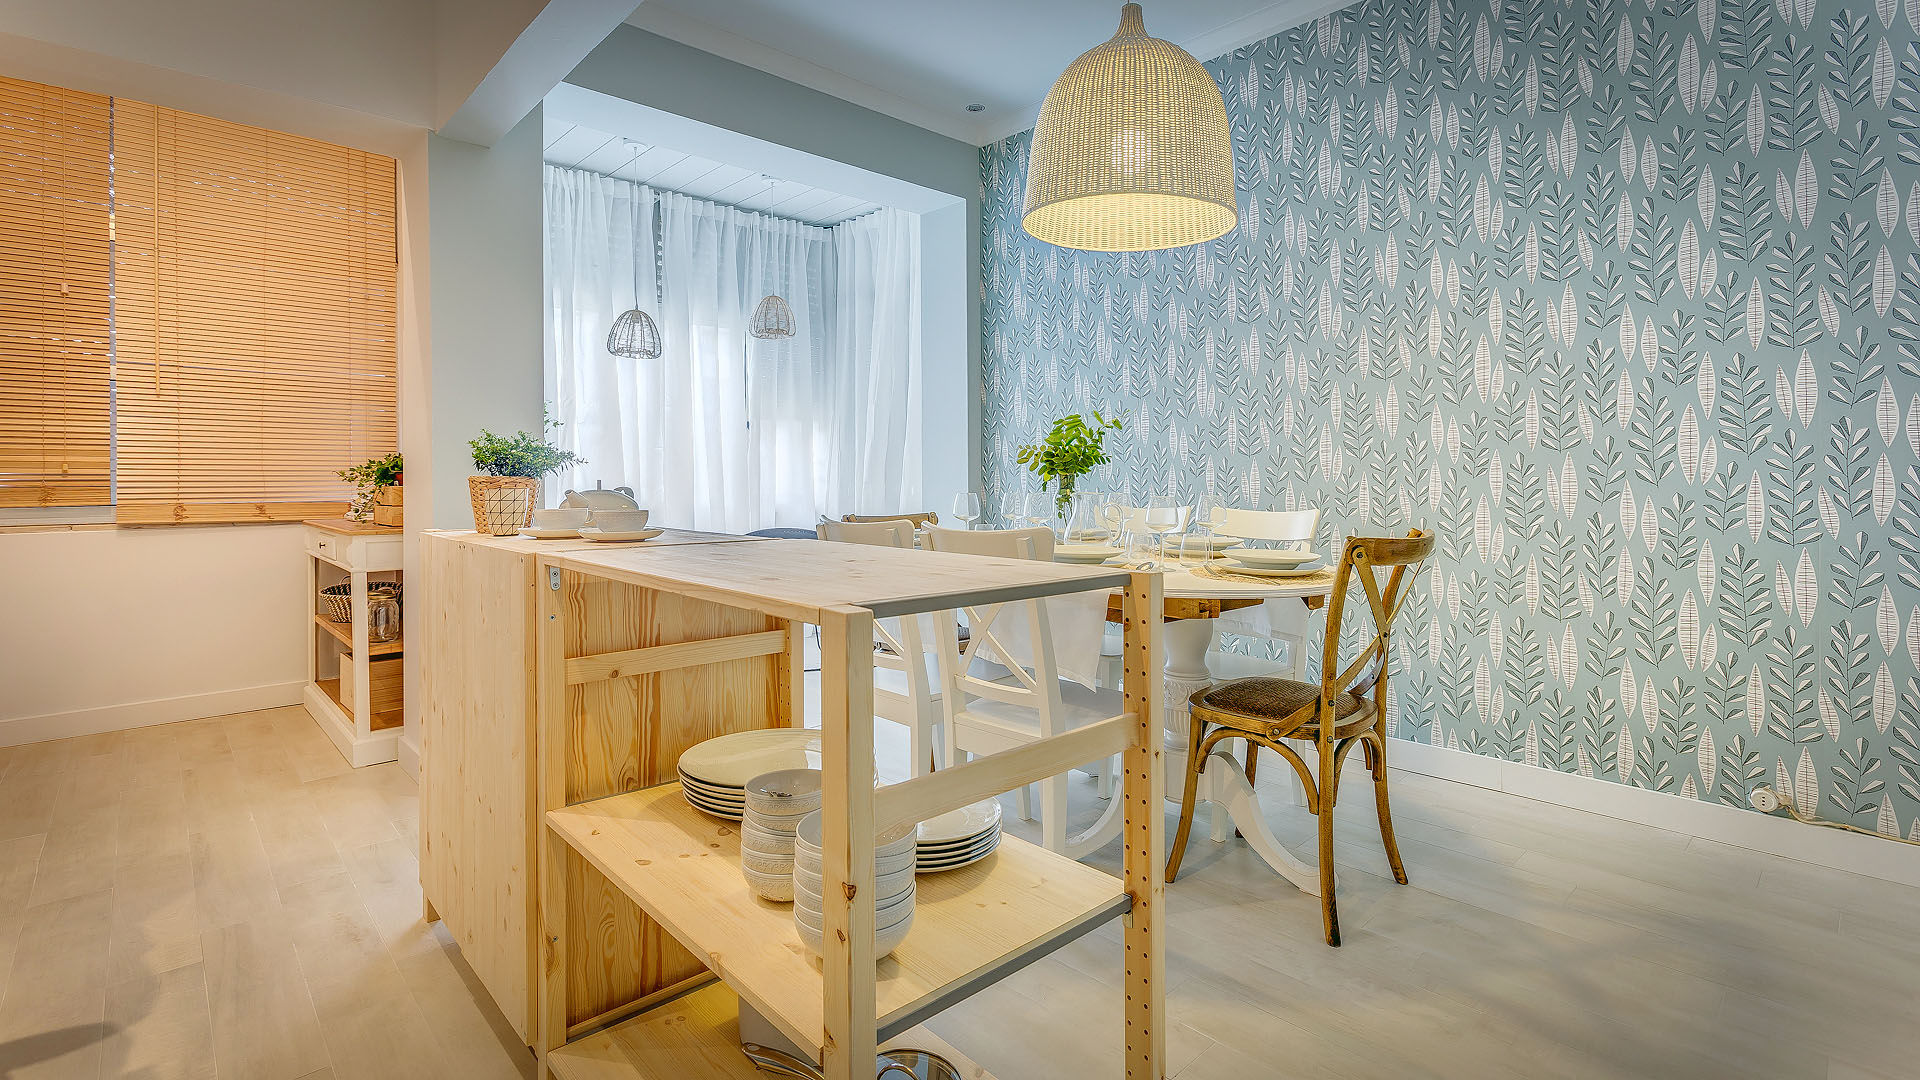 Querido Mudei a Casa - Episódio #2421, Homestories Homestories Scandinavian style kitchen